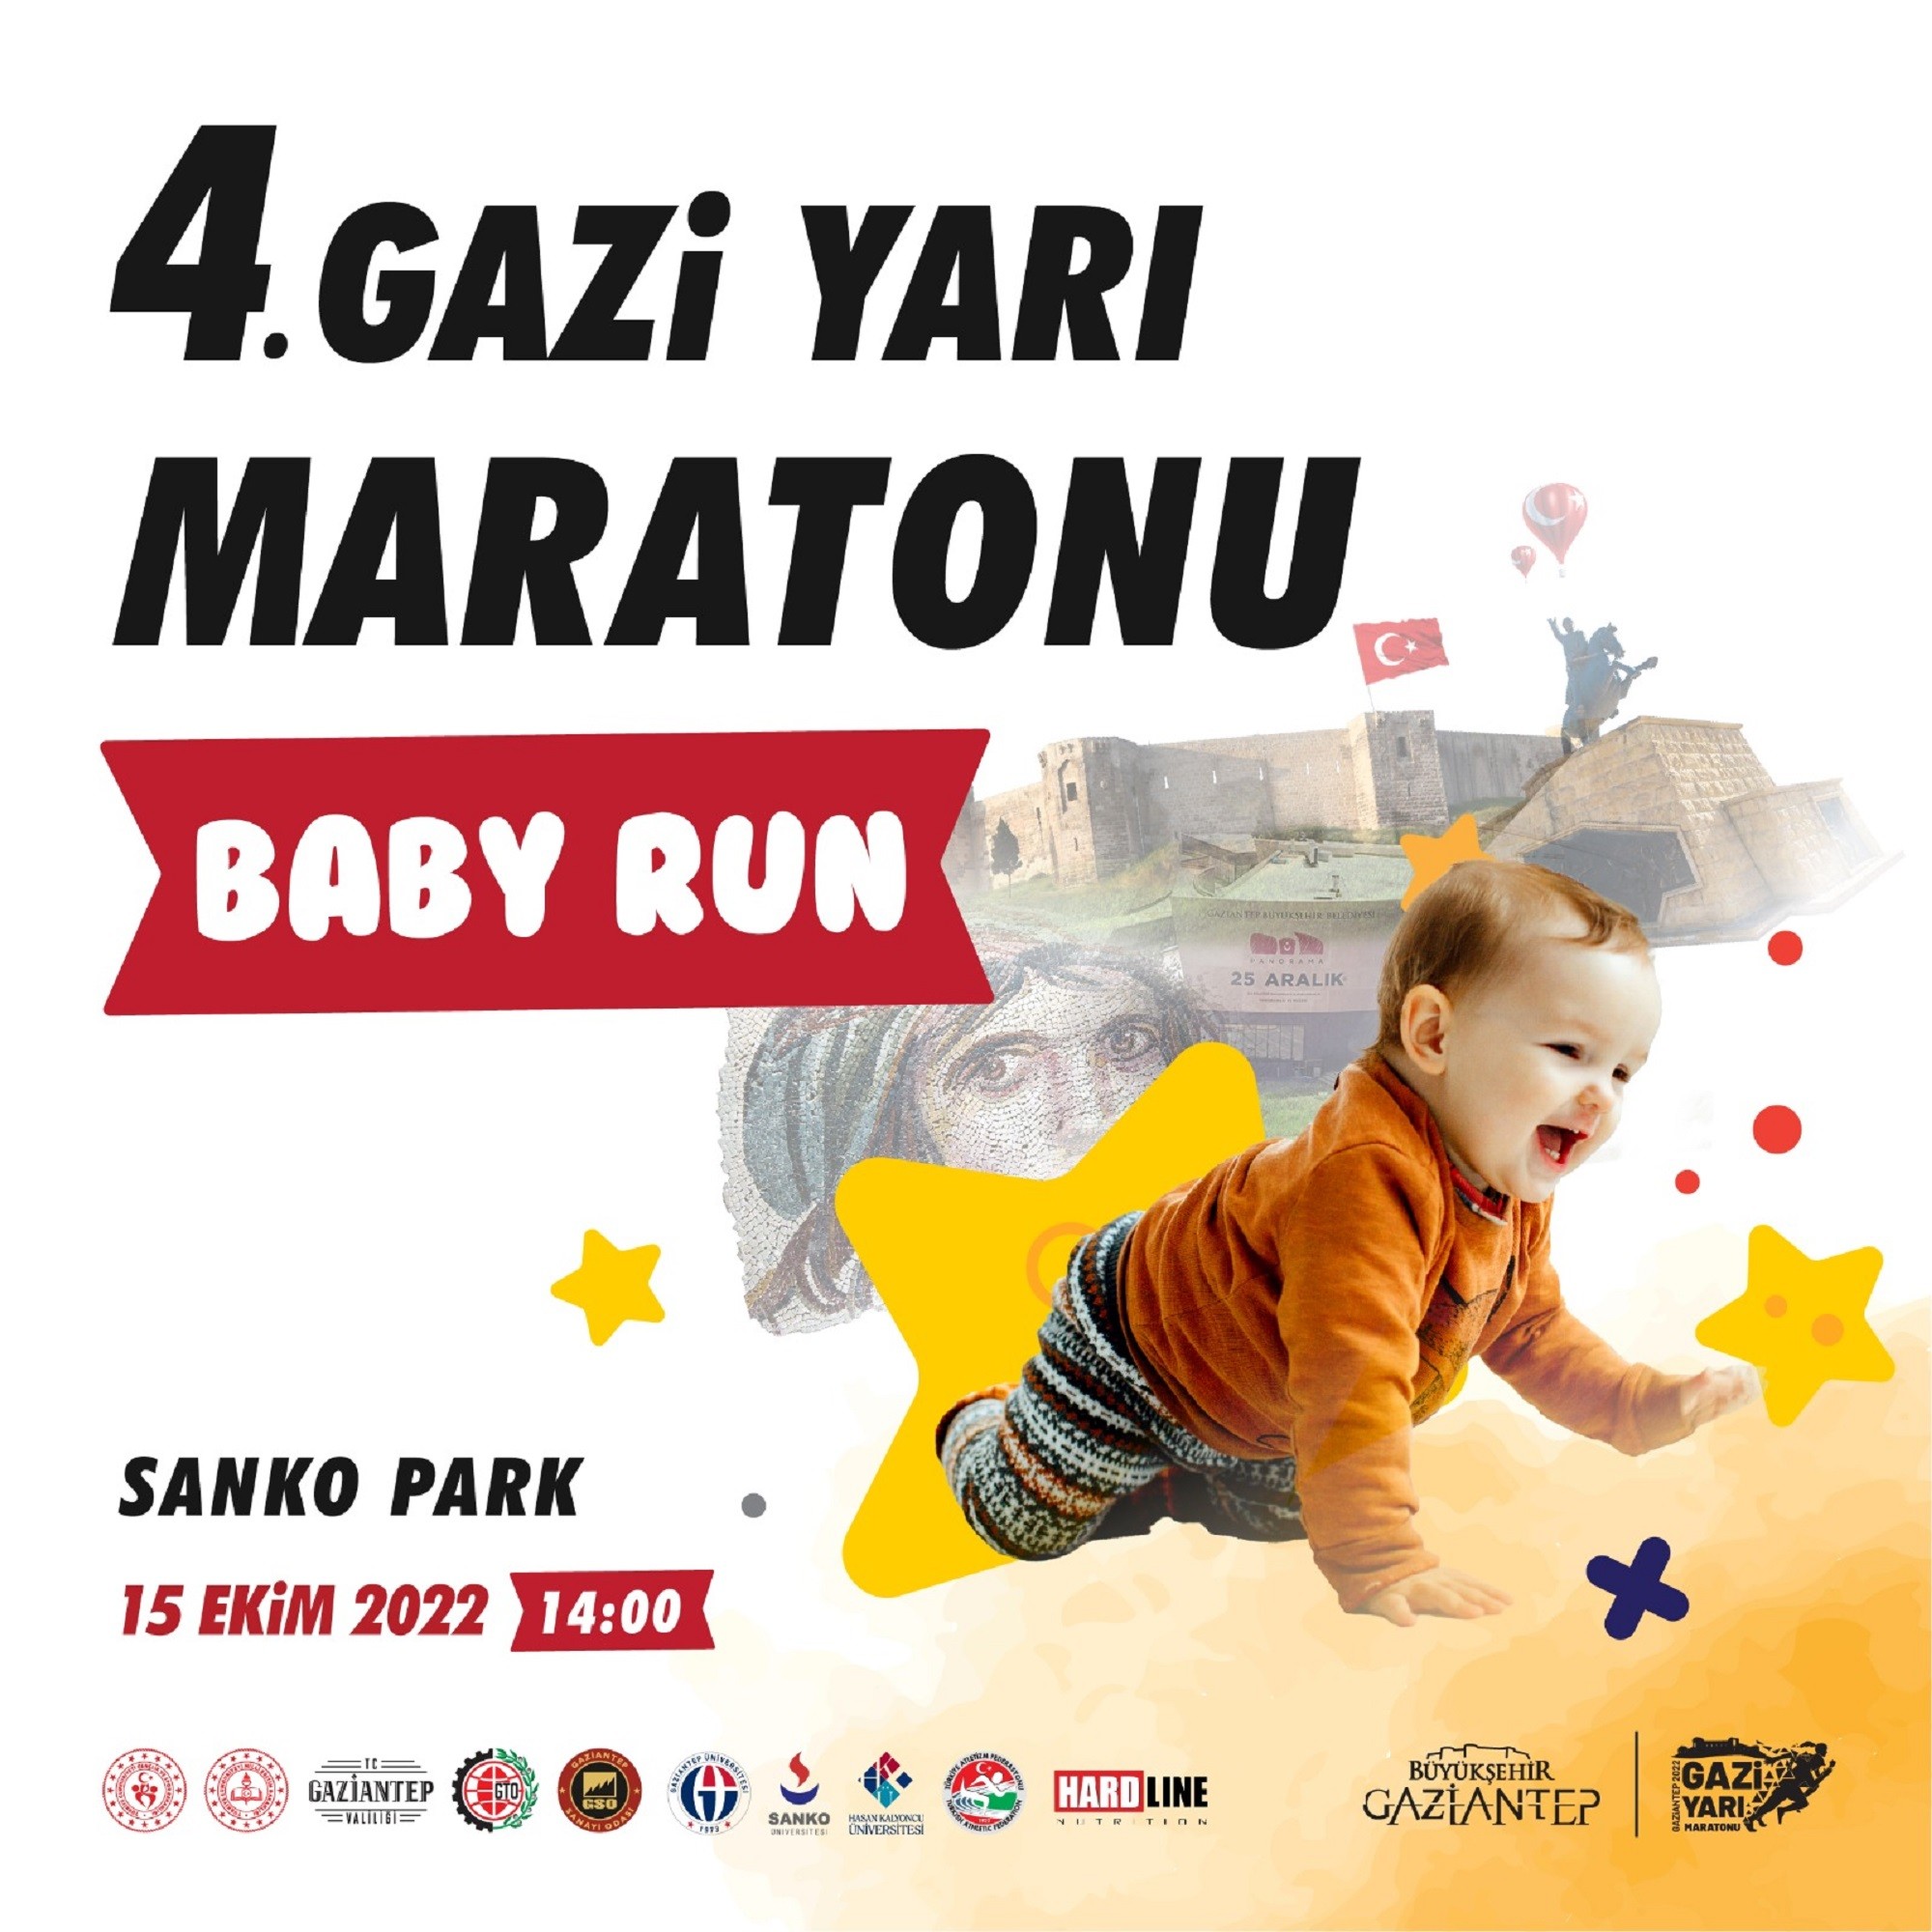 4. Gazi Yarı Maratonu’nda bebekler de yarışacak